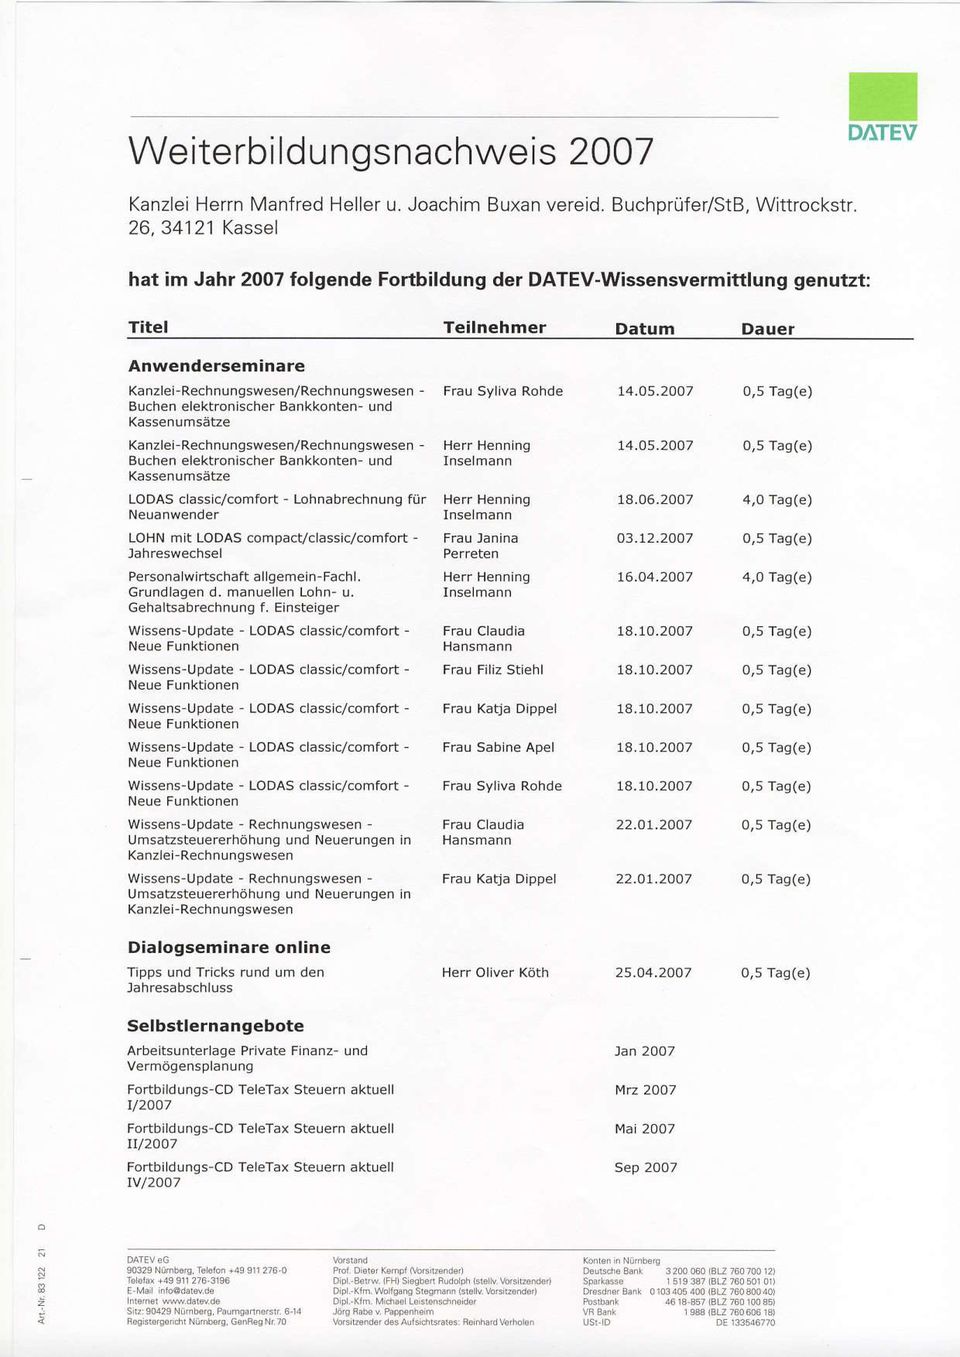 2ao7 0,5 Tag(e) Buchen elektronischer Bankkonten- und Kanzlei Rechnungswesen/Rechnunsswesen - Herr Henning 14.05.